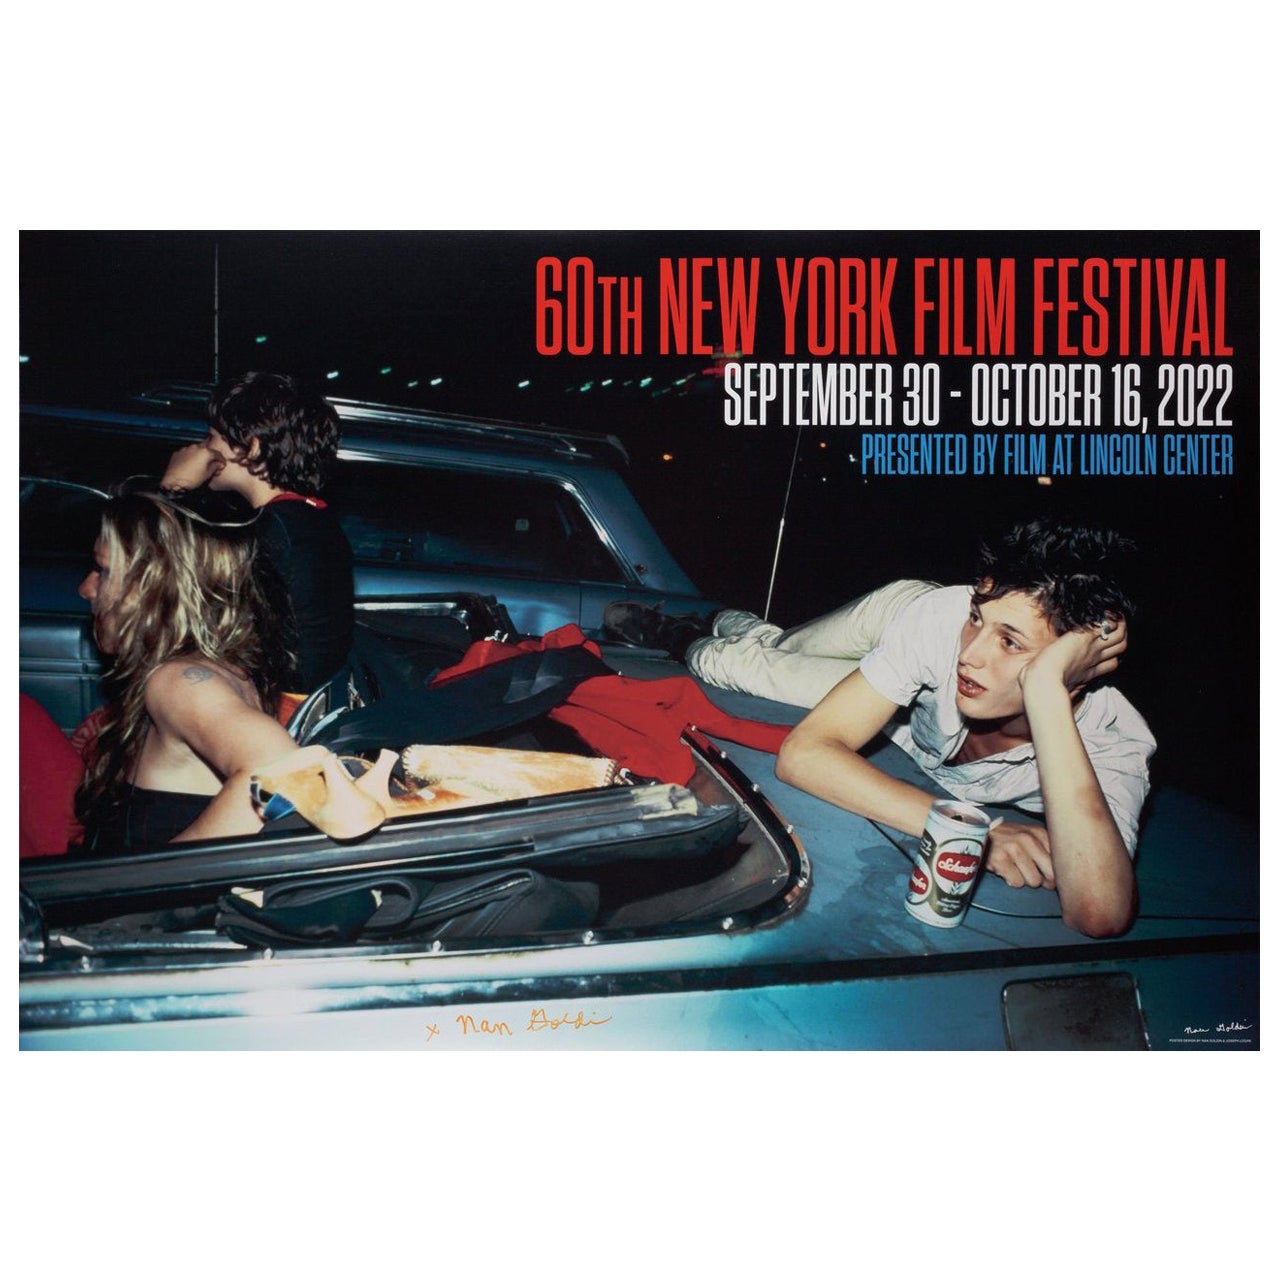 Affiche du 60e Festival du film de New York 2022, signée